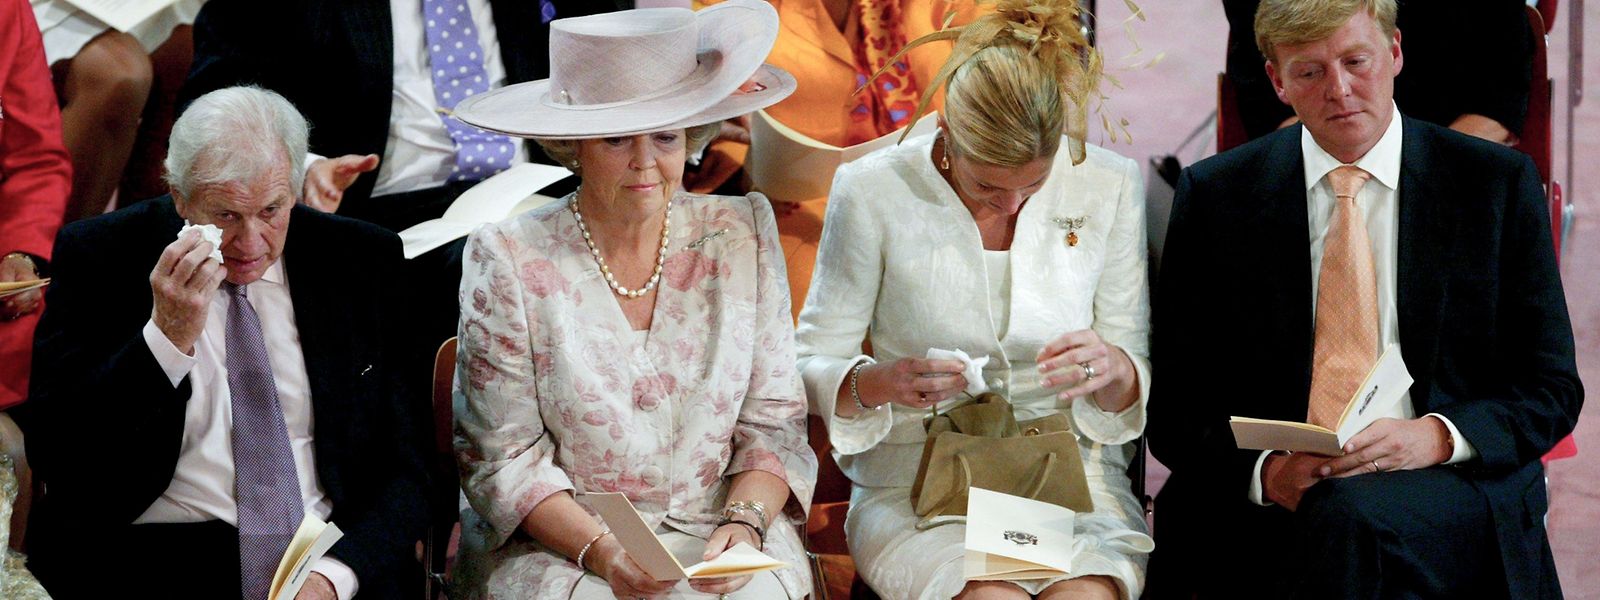 Dieses Foto aus dem Jahr 2004 zeigt  neben der niederländischen Königin Beatrix und dem Thronfolgerpaar bei der Taufe von Prinzessin Catharina-Amalia.